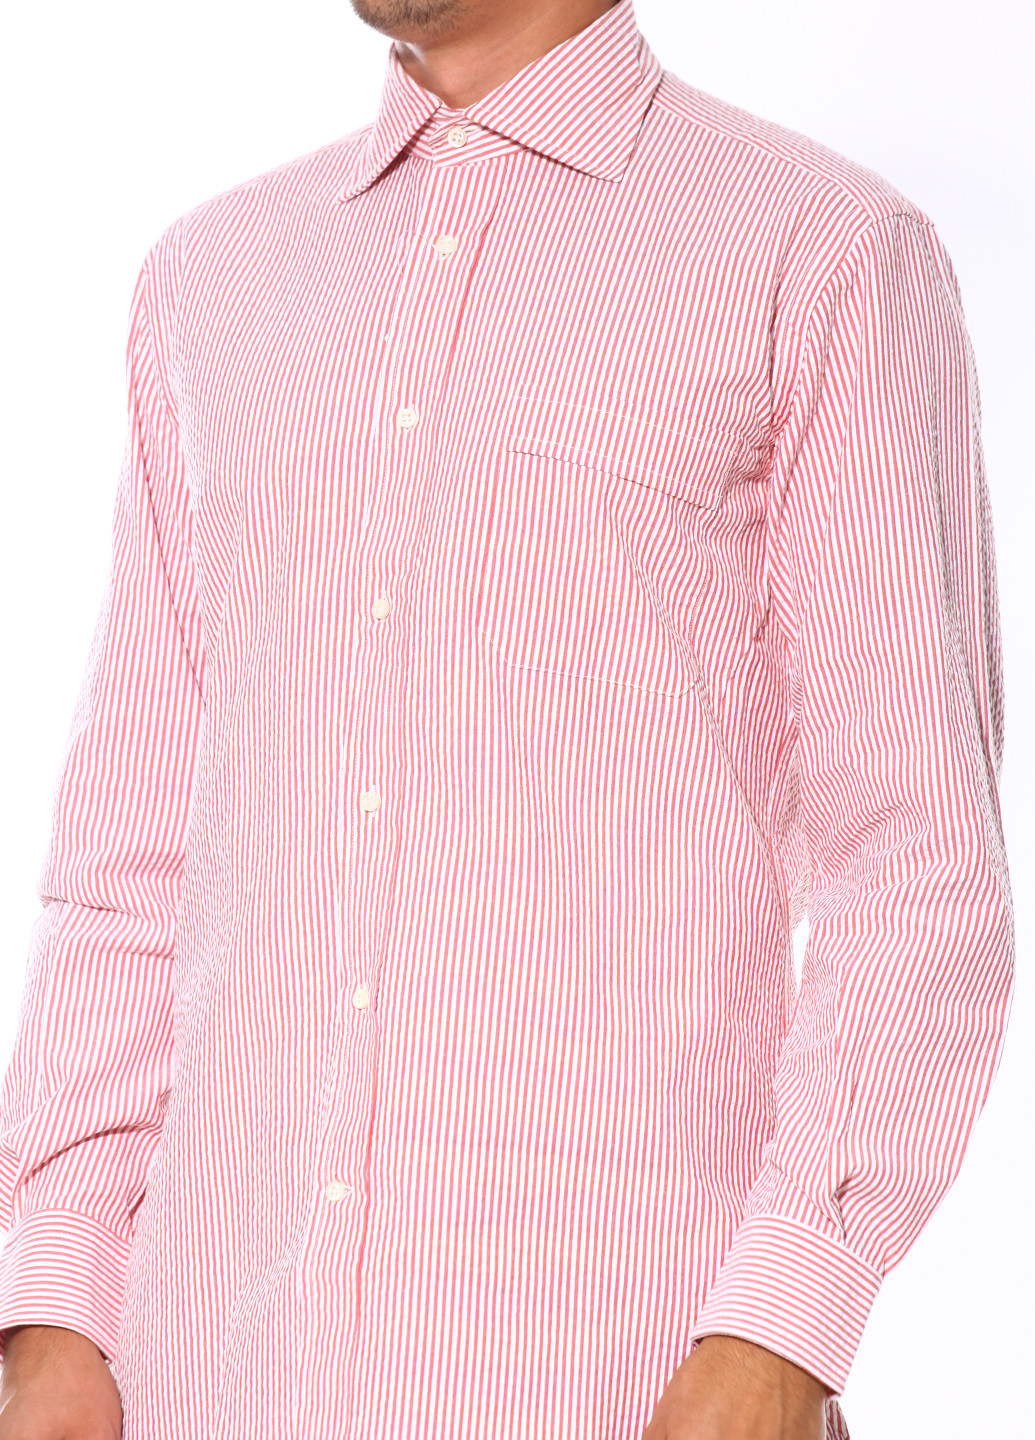 Розовая кэжуал рубашка Guy Rover